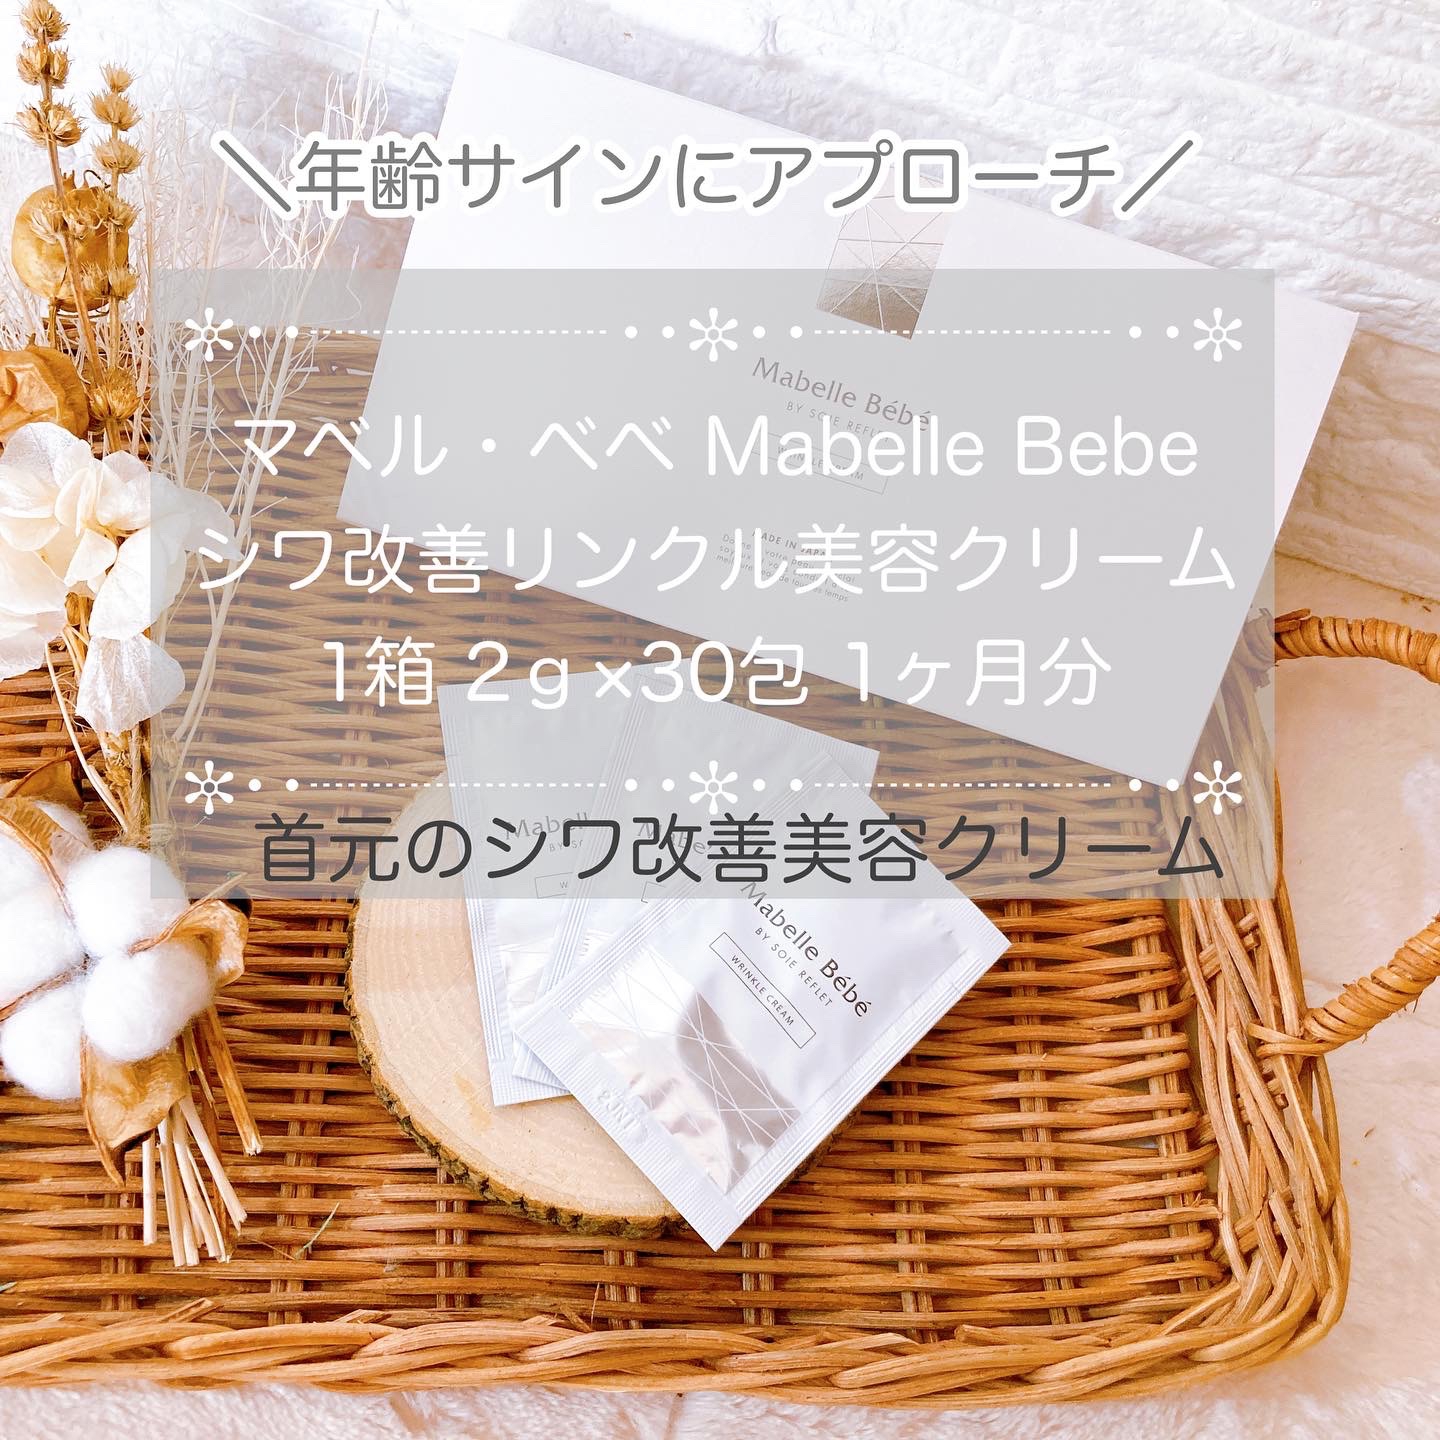 Mabelle Bébé(マベル・ベベ) シワ改善リンクル美容クリームの良い点・メリットに関するメグさんの口コミ画像1